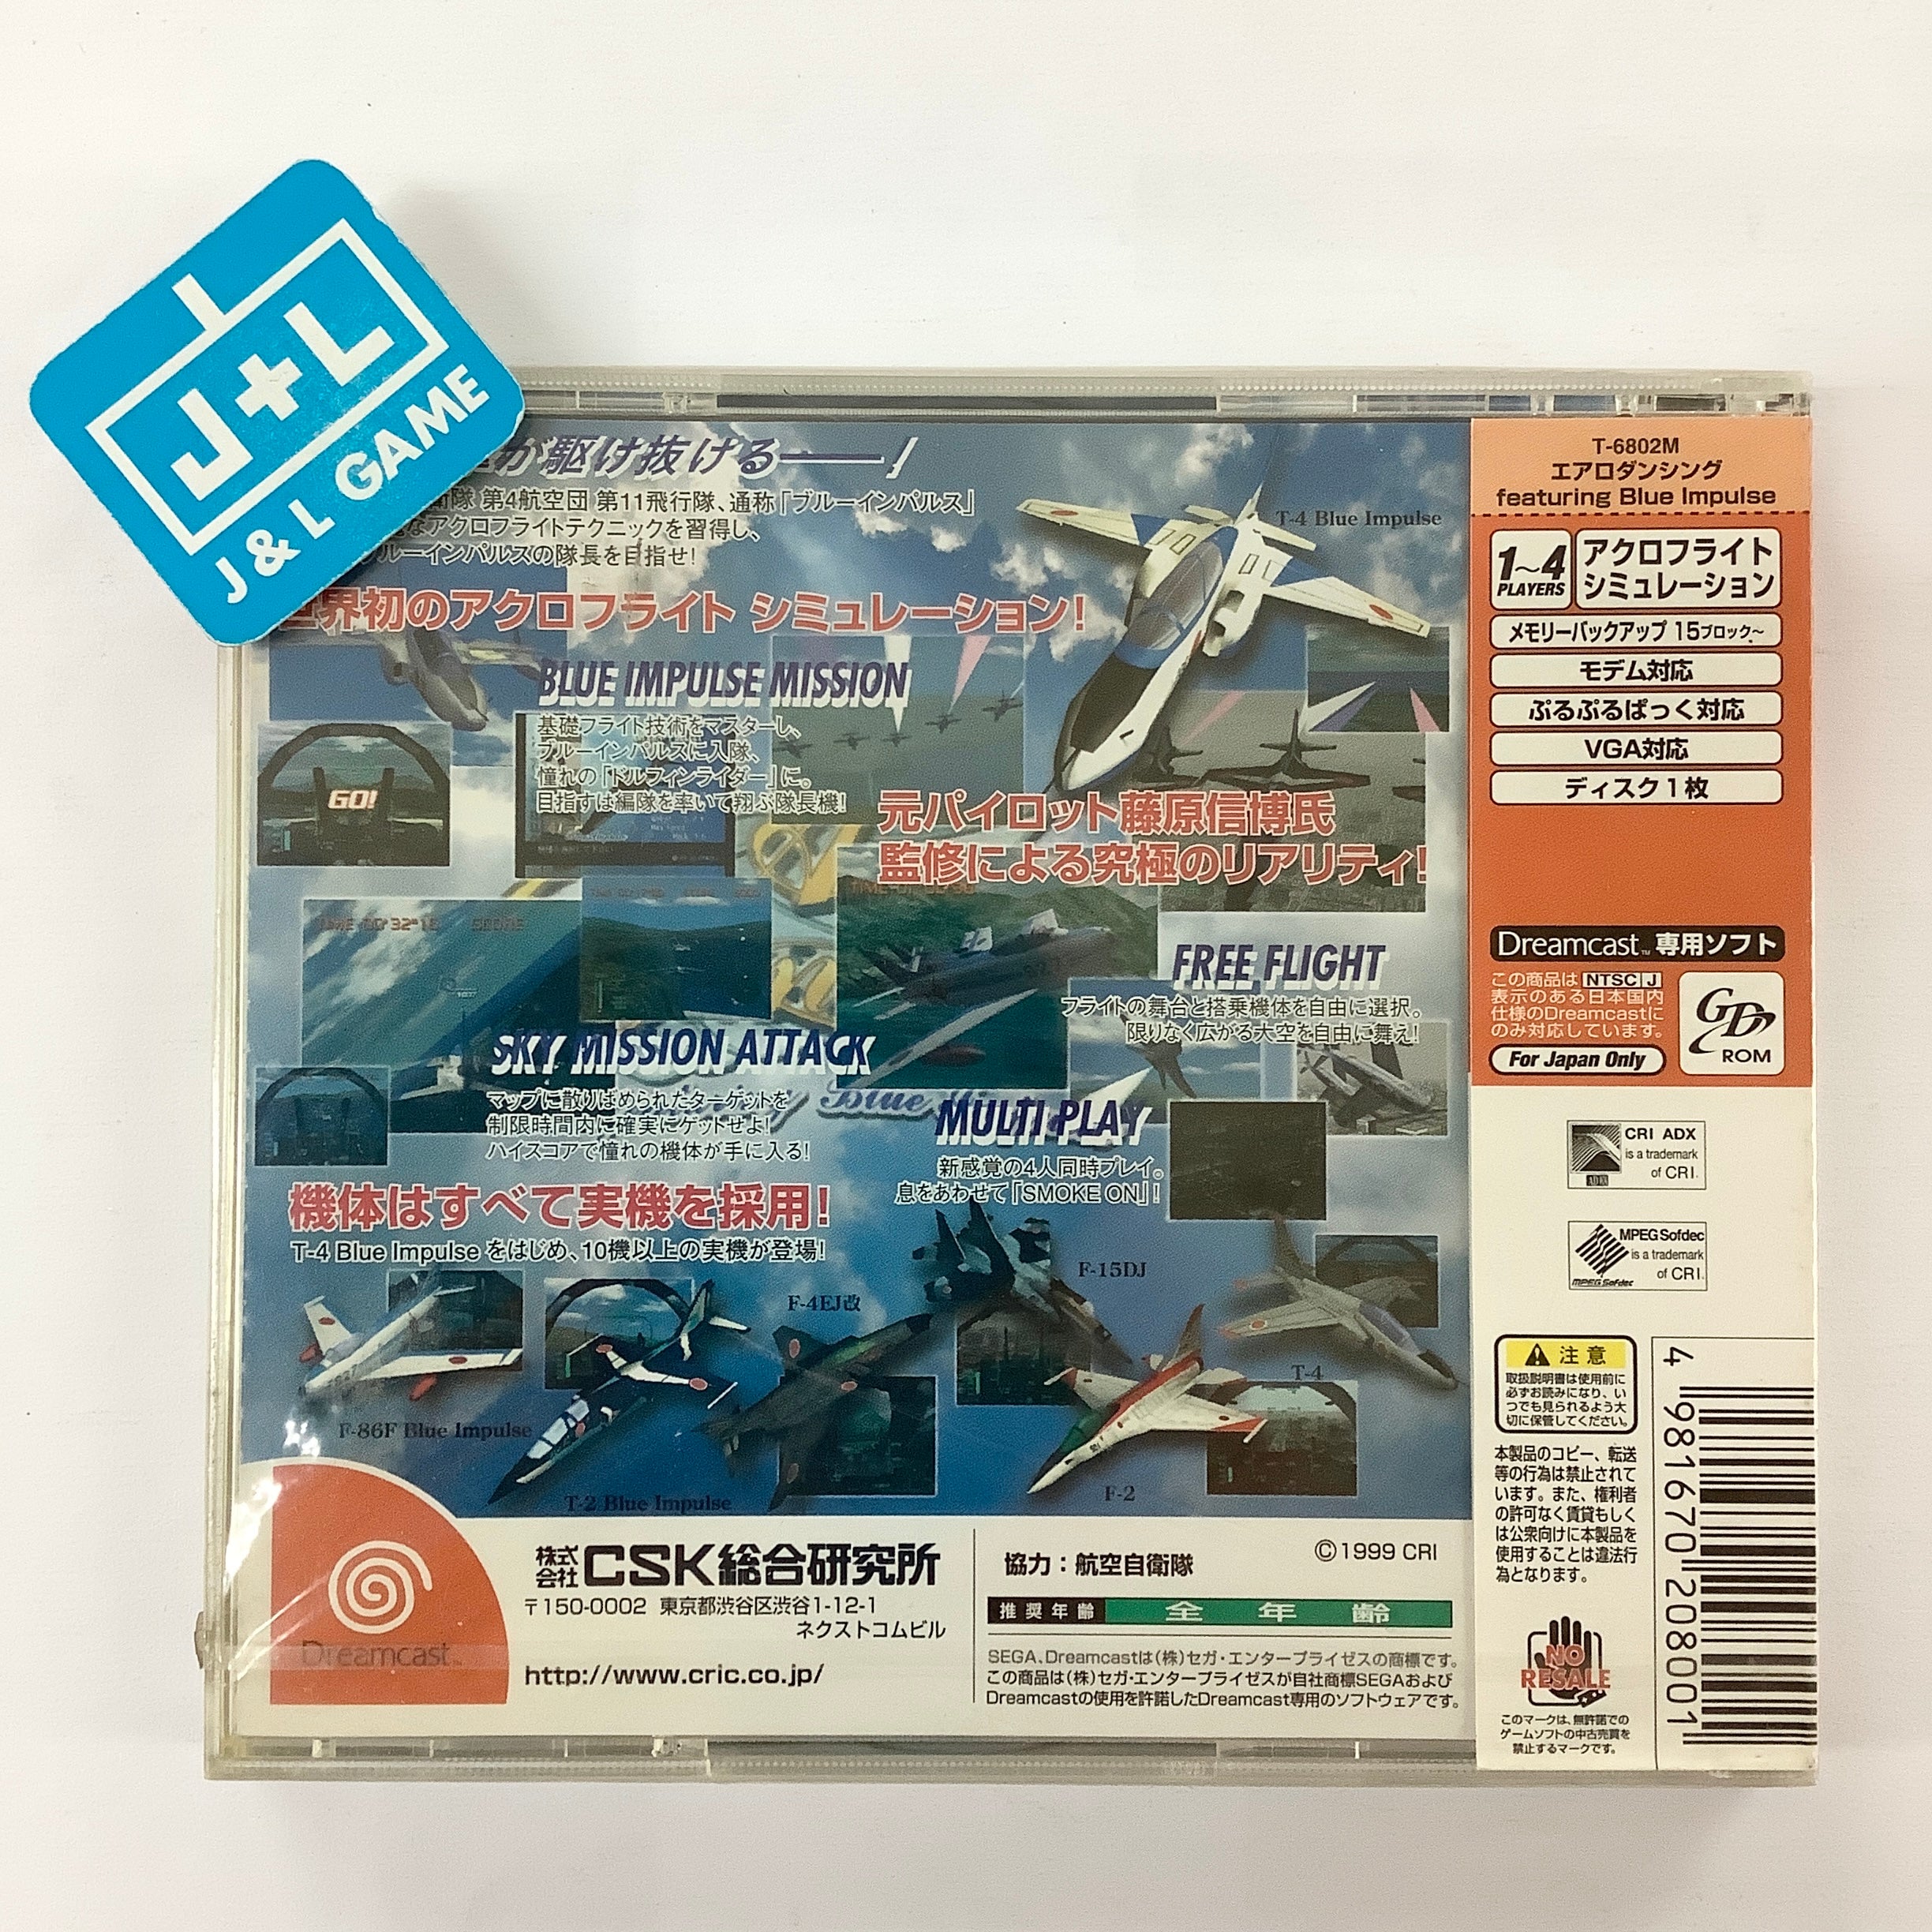 Aero Dancing featuring Blue Impulse - (DC) SEGA Dreamcast (Japanese Import) Video Games CRI   